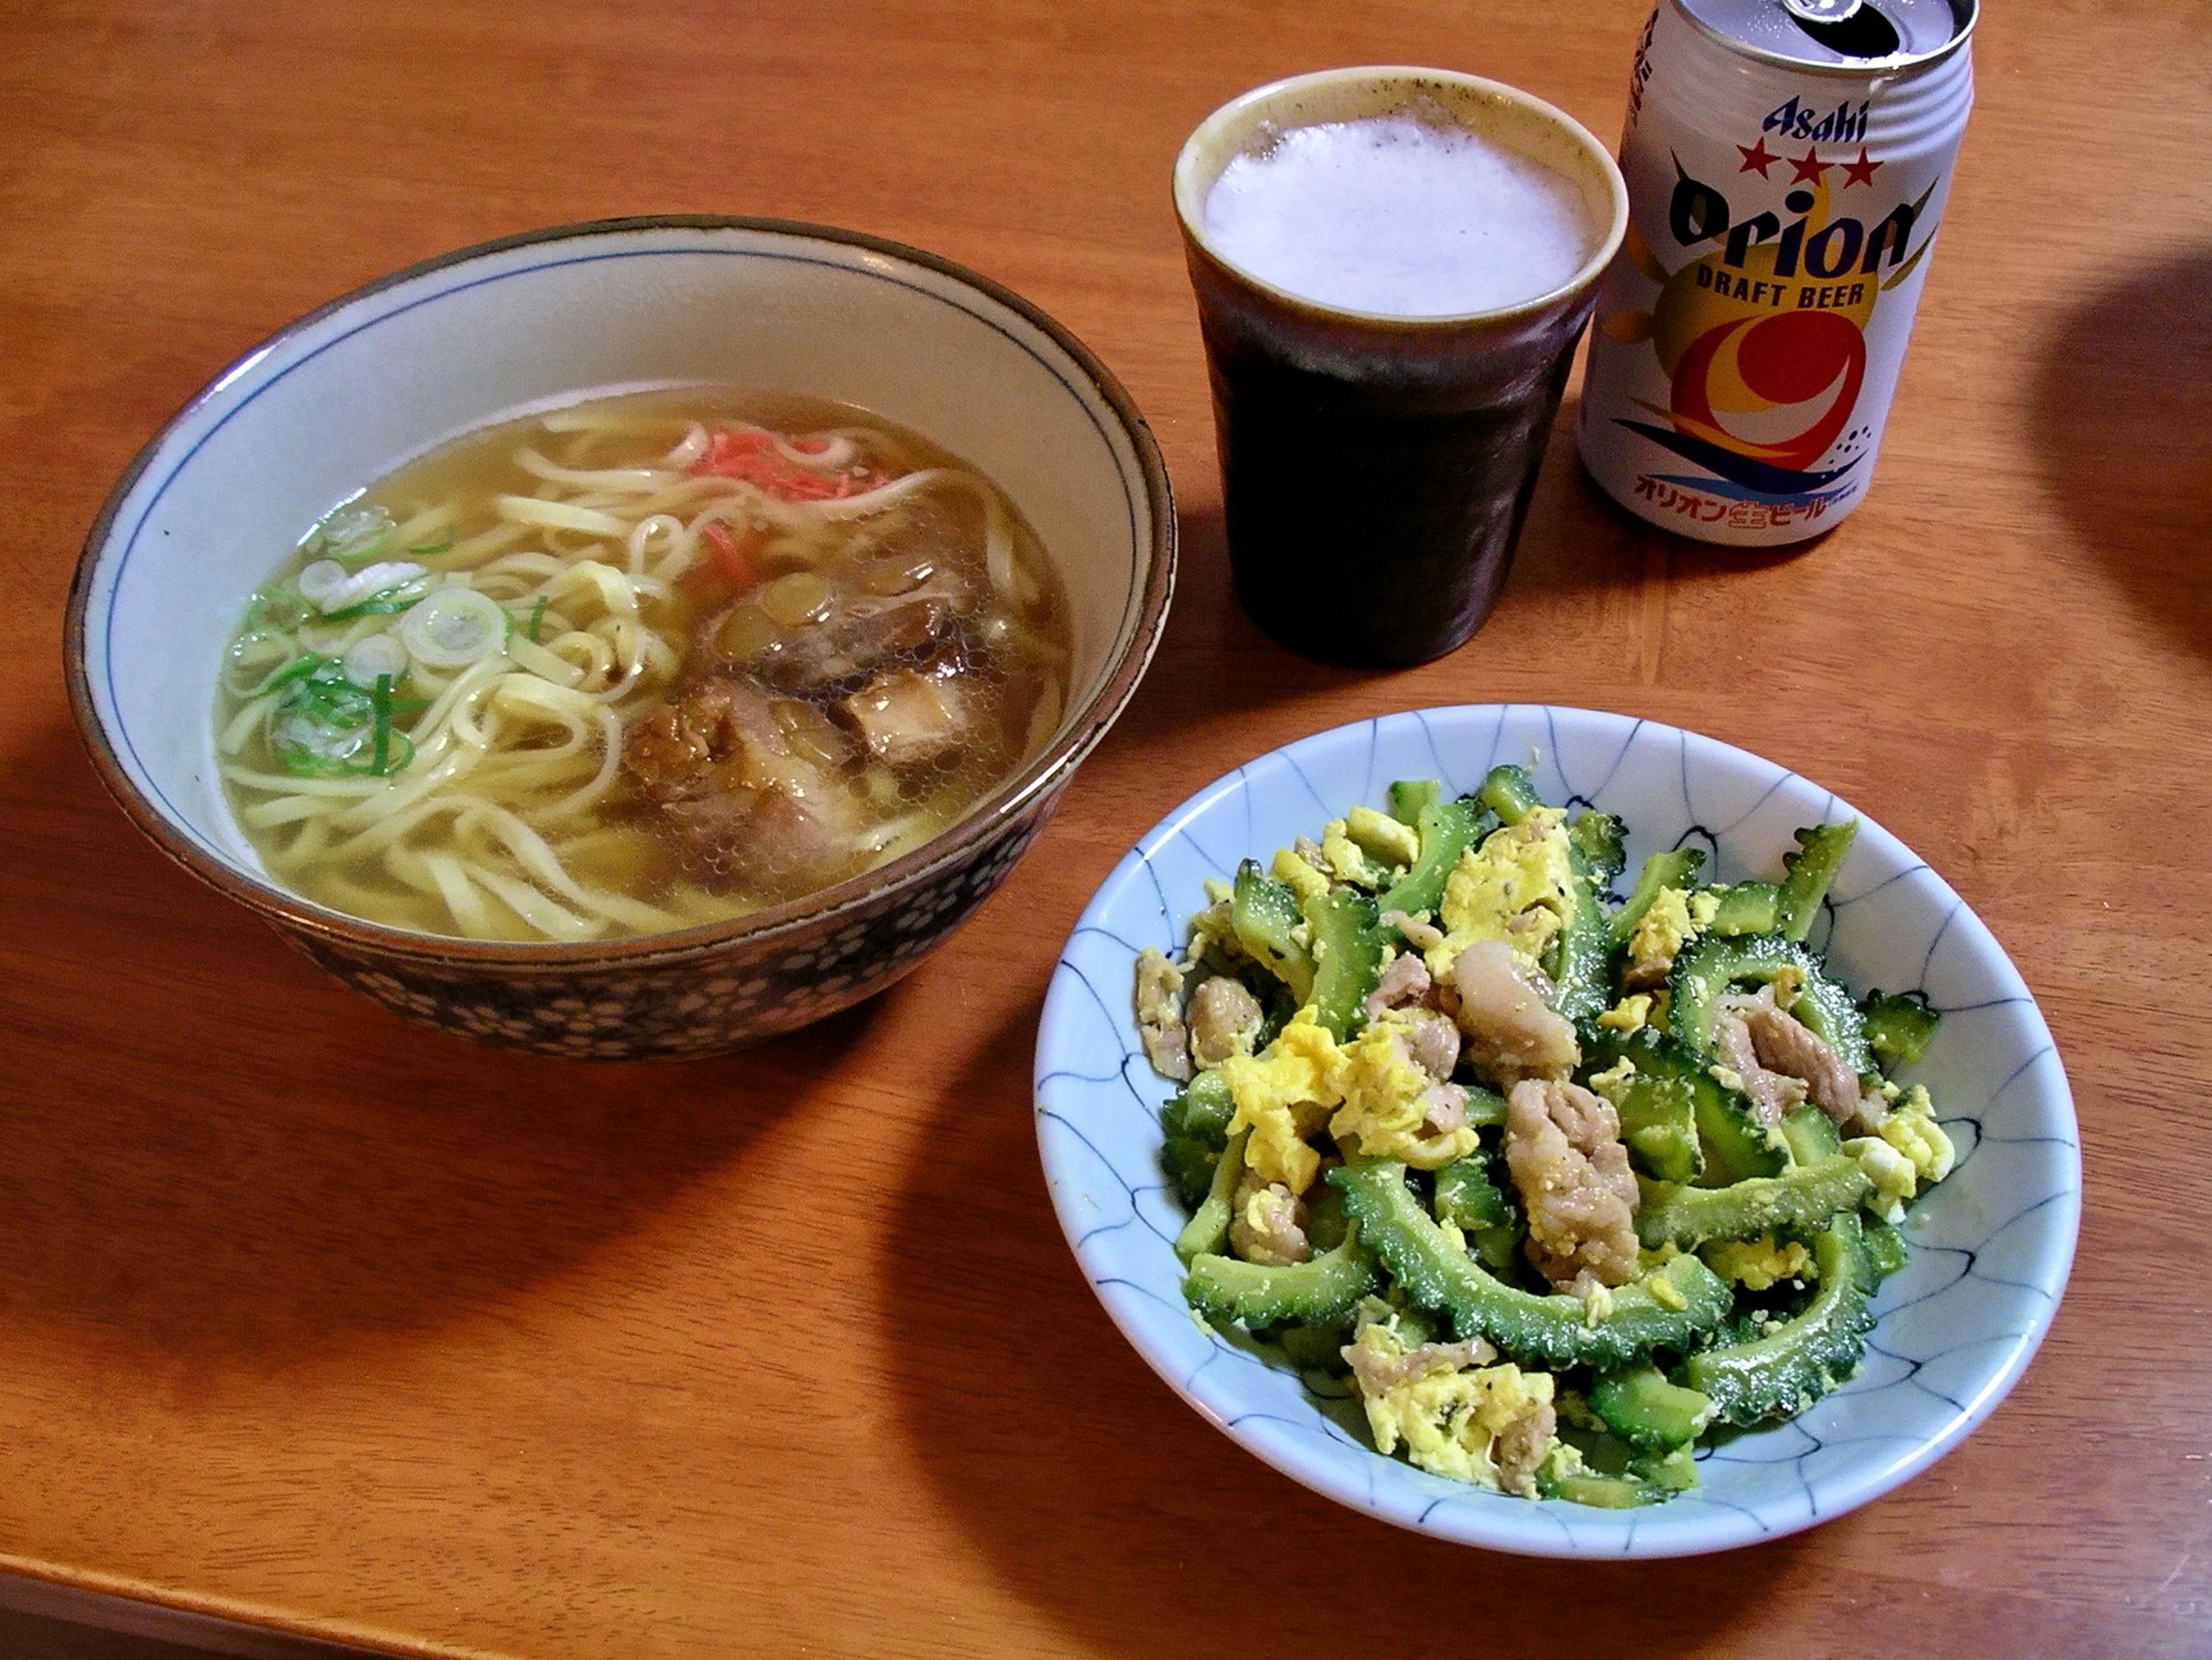 Comida típica: Okinawa soba Y Goya chanpuru con un vaso de cerveza local Orion.